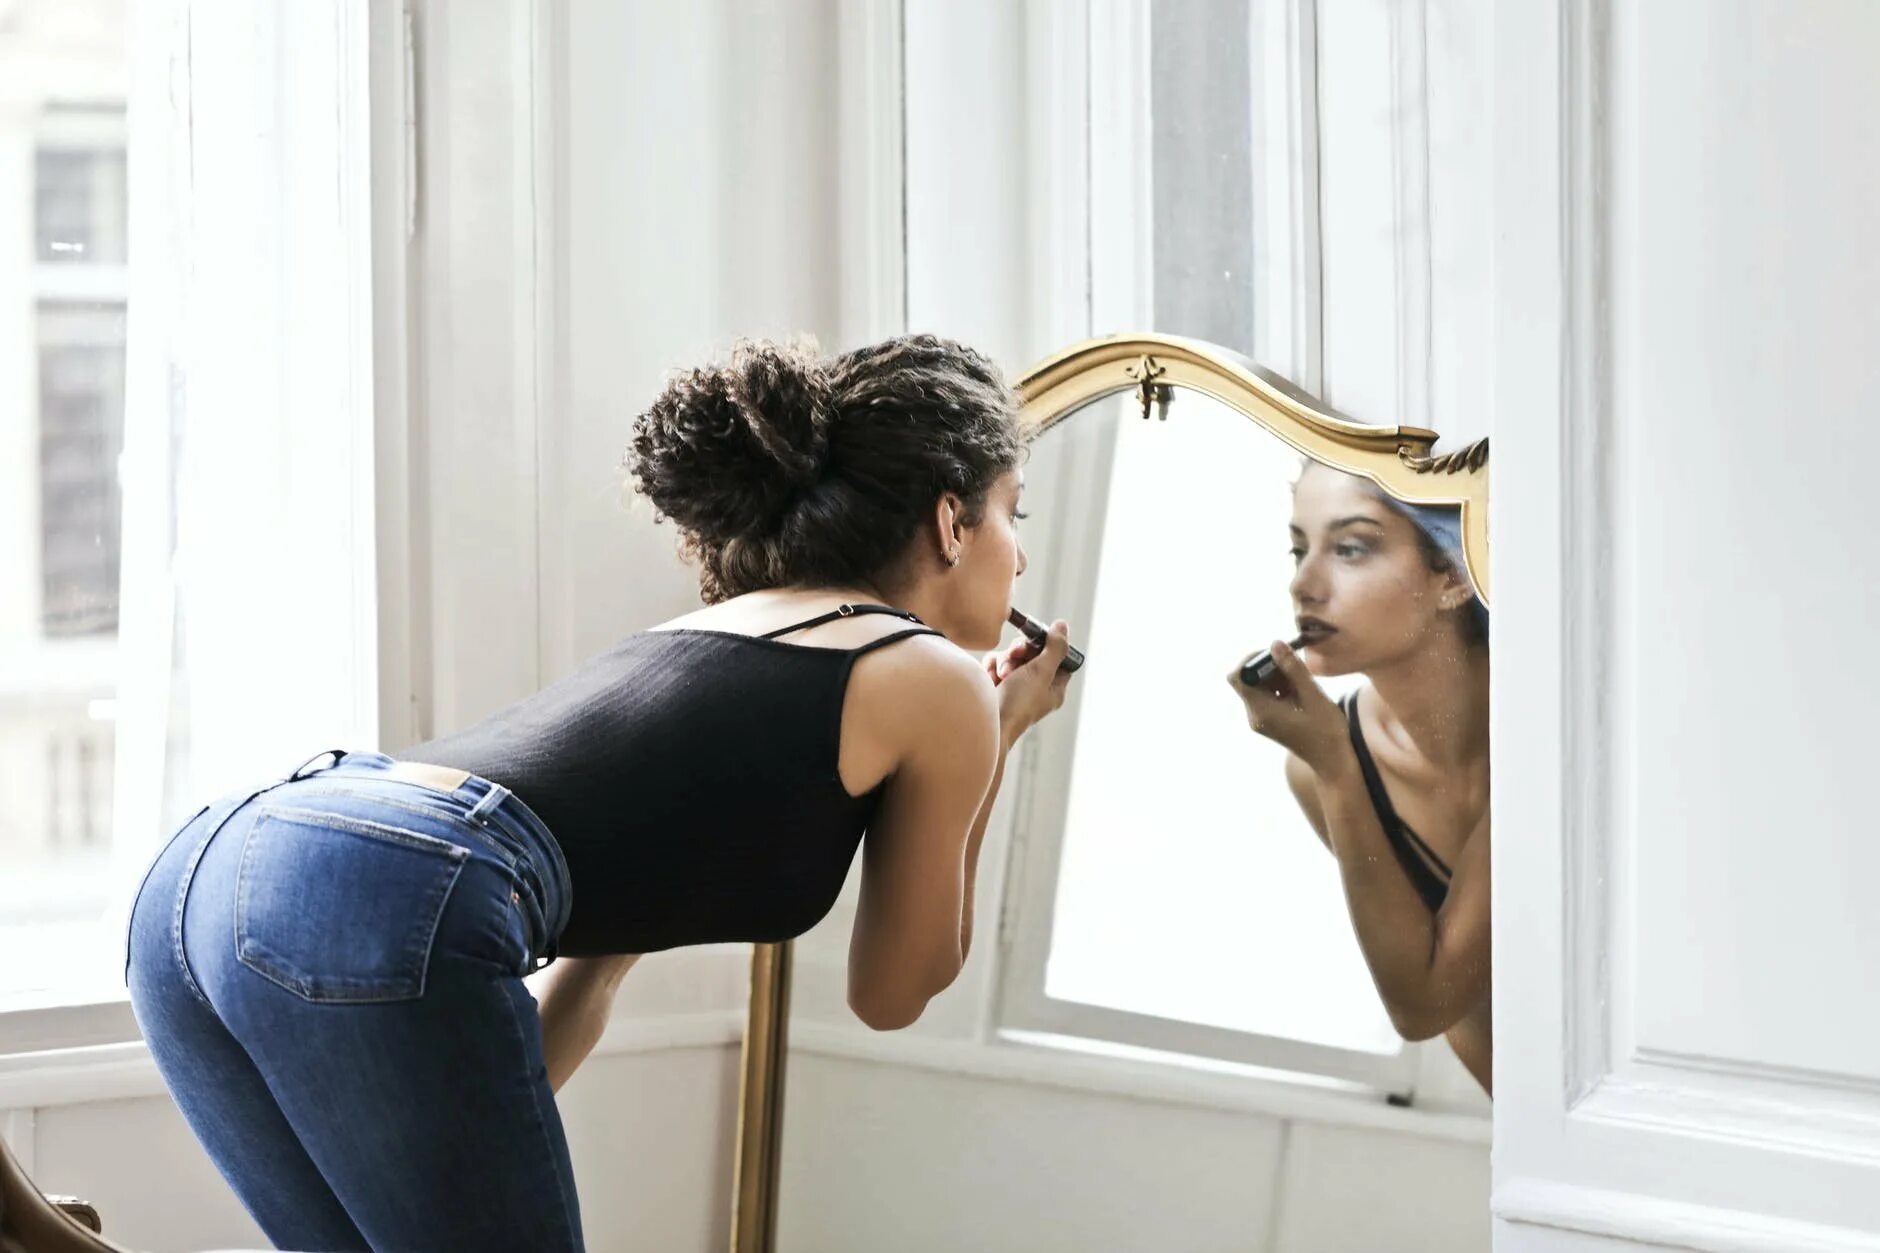 В зеркале вижу себя другой. Девушка в зеркале. Красивая женщина у зеркала. Девушкапеиед зеркалом. Отражение женщины в зеркале.